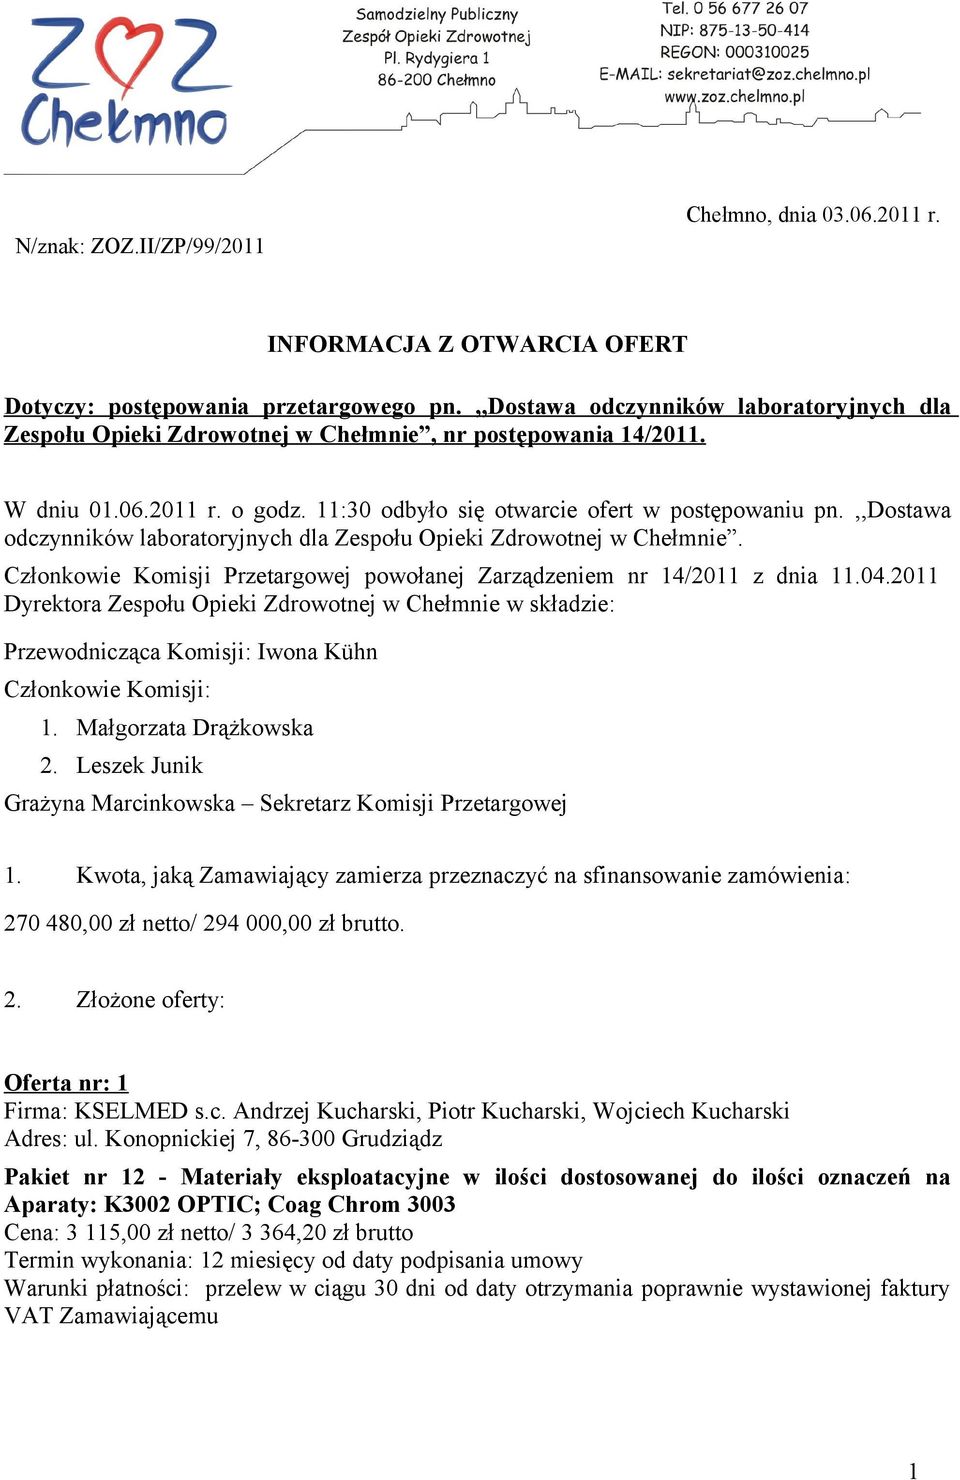 ,,dostawa odczynników laboratoryjnych dla Zespołu Opieki Zdrowotnej w Chełmnie. Członkowie Komisji Przetargowej powołanej Zarządzeniem nr 14/2011 z dnia 11.04.